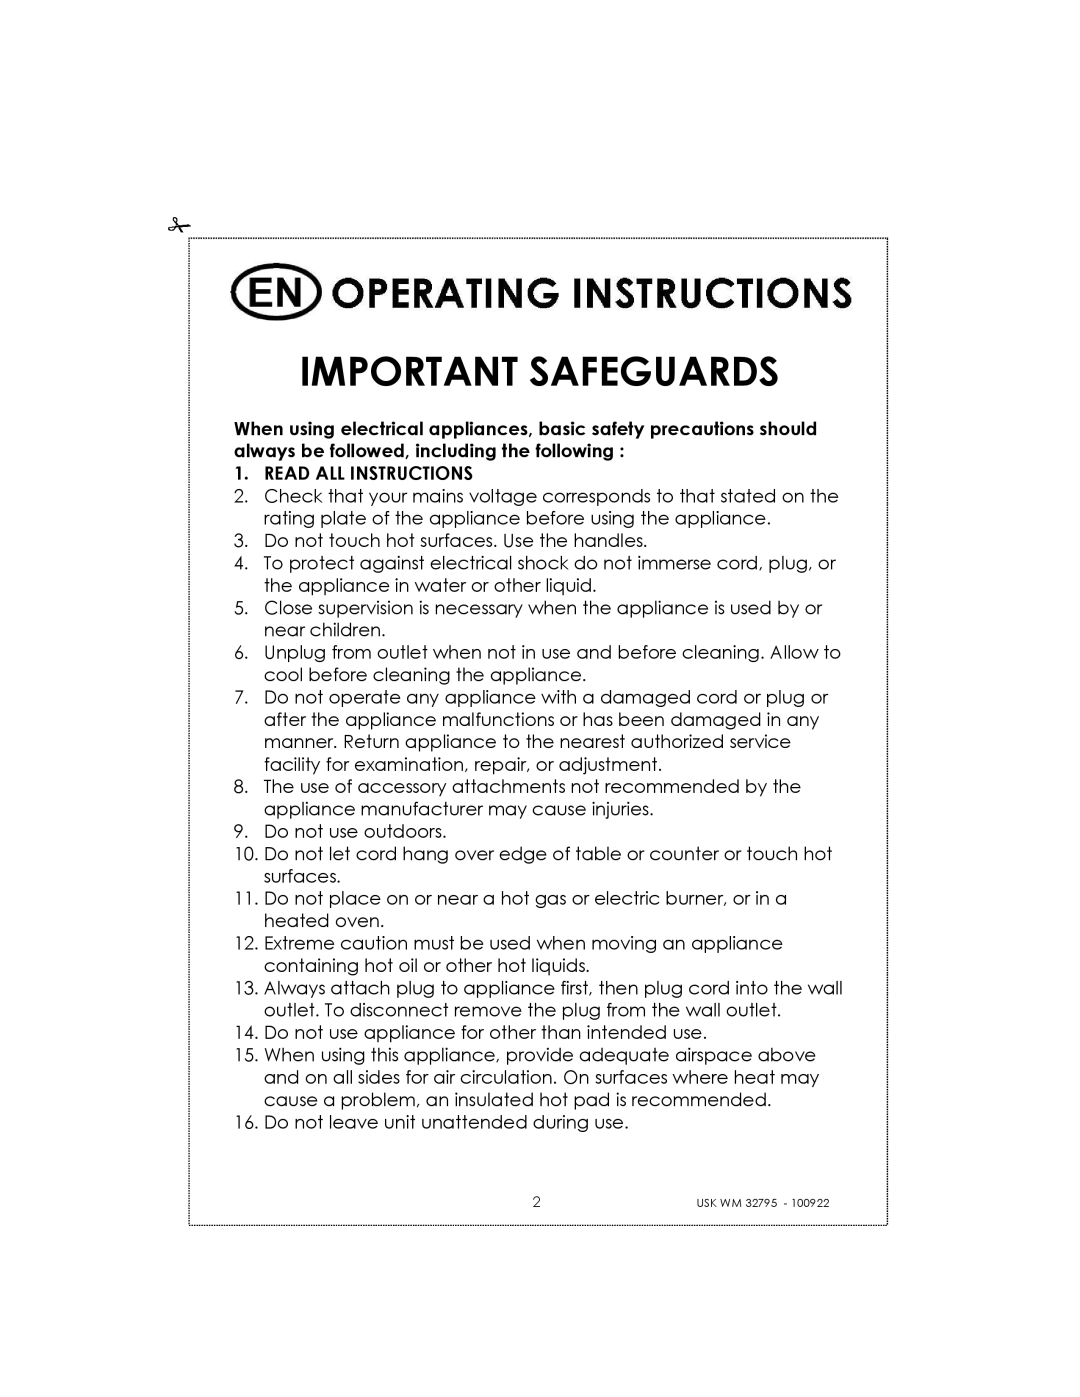 Kalorik USK WM 32795 manual Important Safeguards 